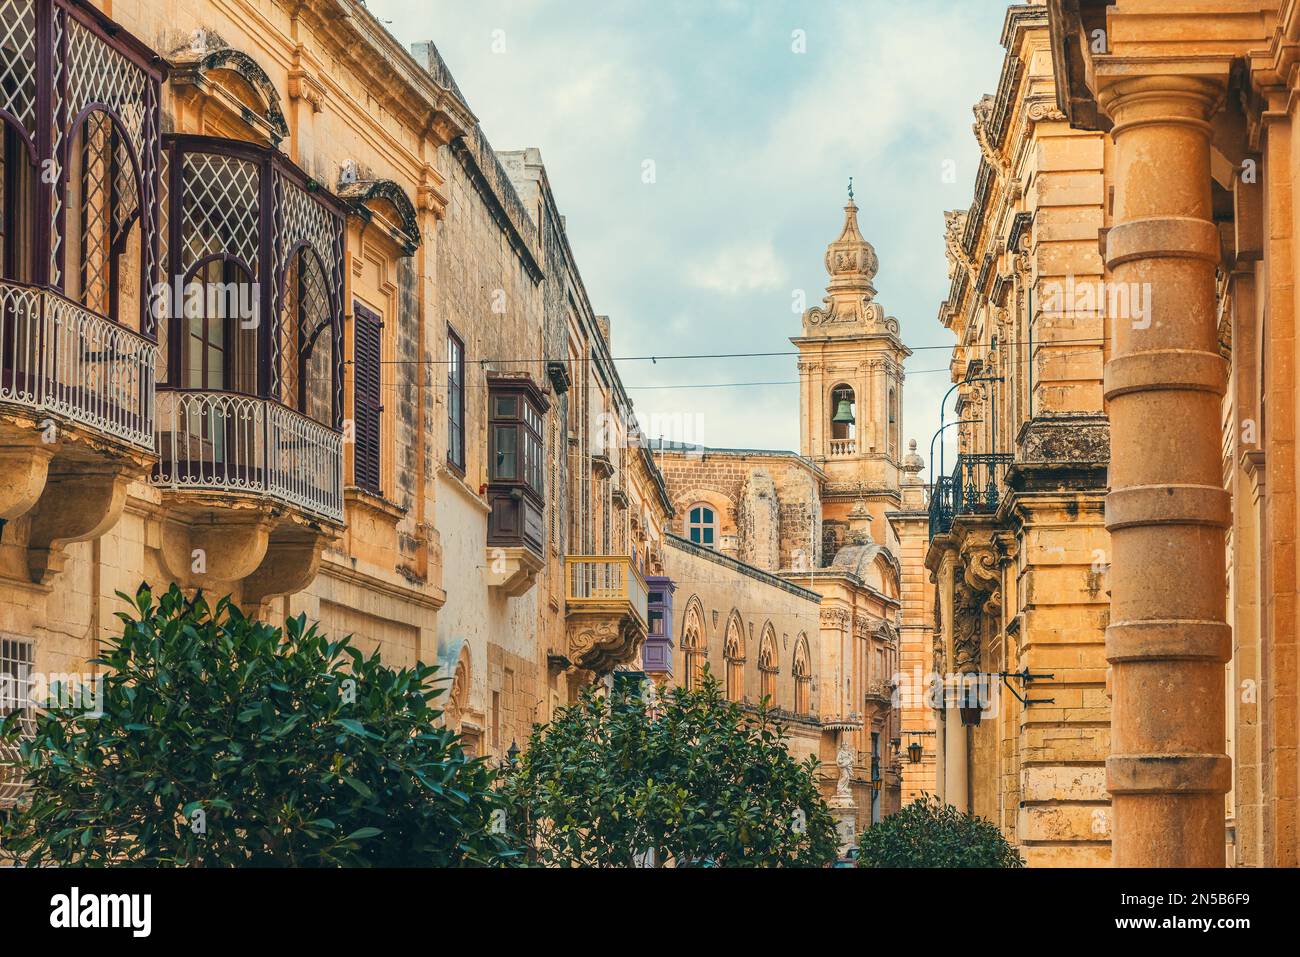 Vecchia città medievale di Mdina con la cattedrale di San Paolo e edifici in pietra gialla con balcone, Malta. Destinazione di viaggio in Europa Foto Stock